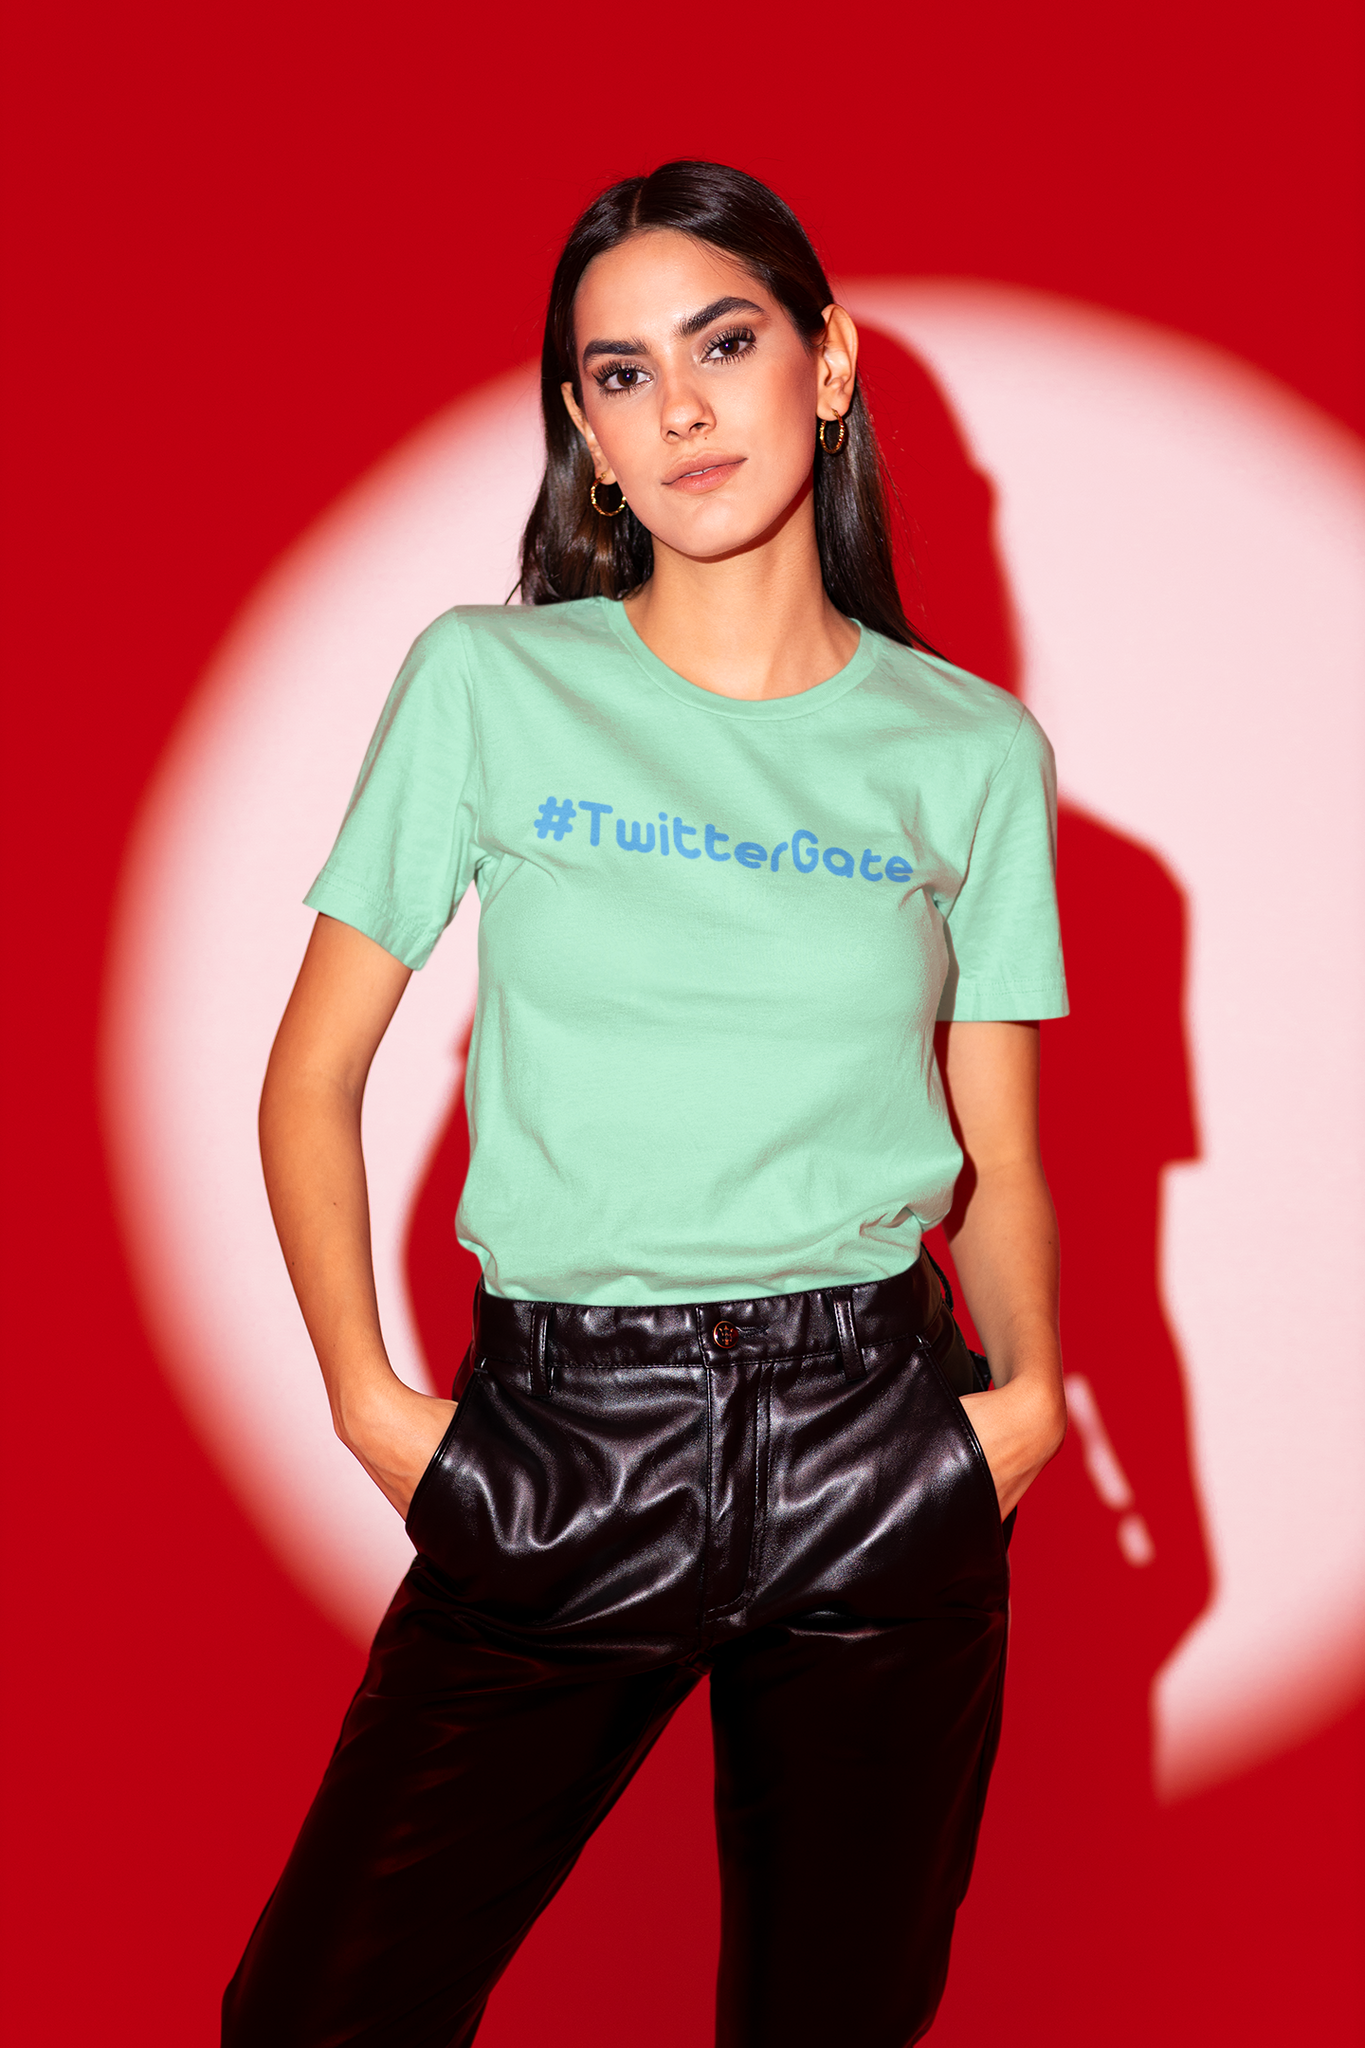 #TwitterGate T-Shirt Women